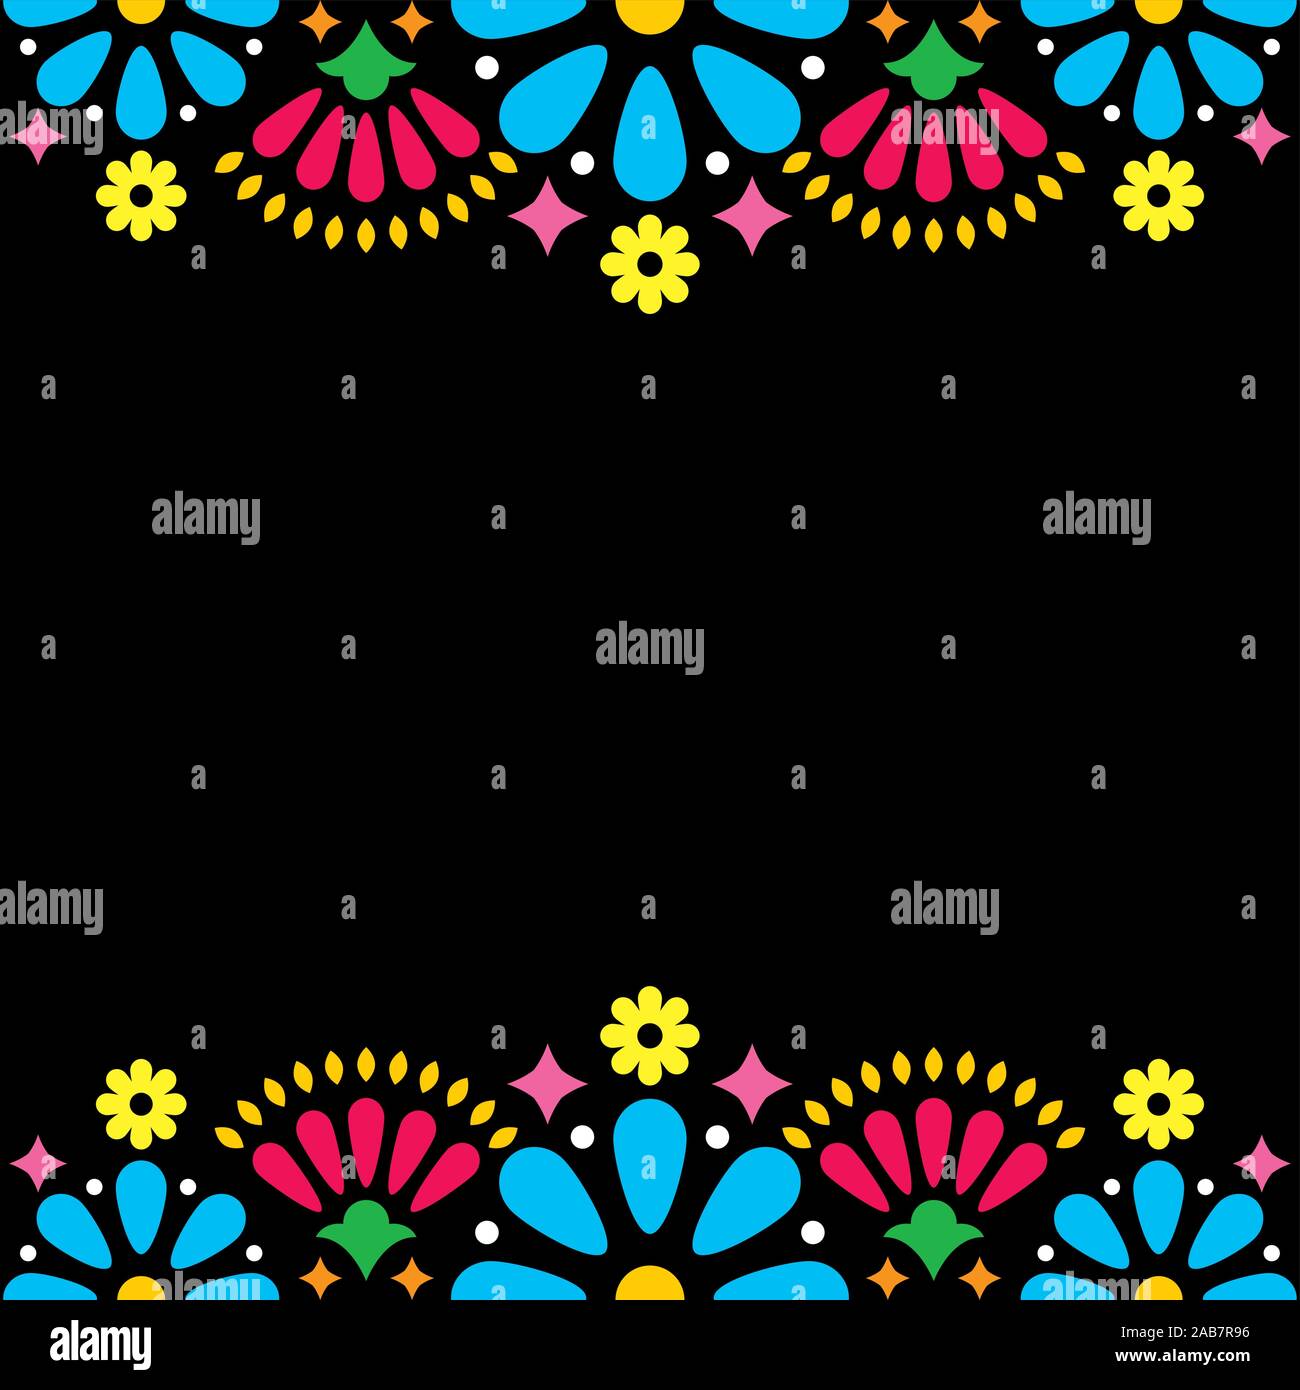 Mexikanische Volksmusik vektor Hochzeit oder Party Einladung, Grußkarte, bunten Rahmen Design mit blauer Blumen und abstrakte Formen auf Schwarz Stock Vektor